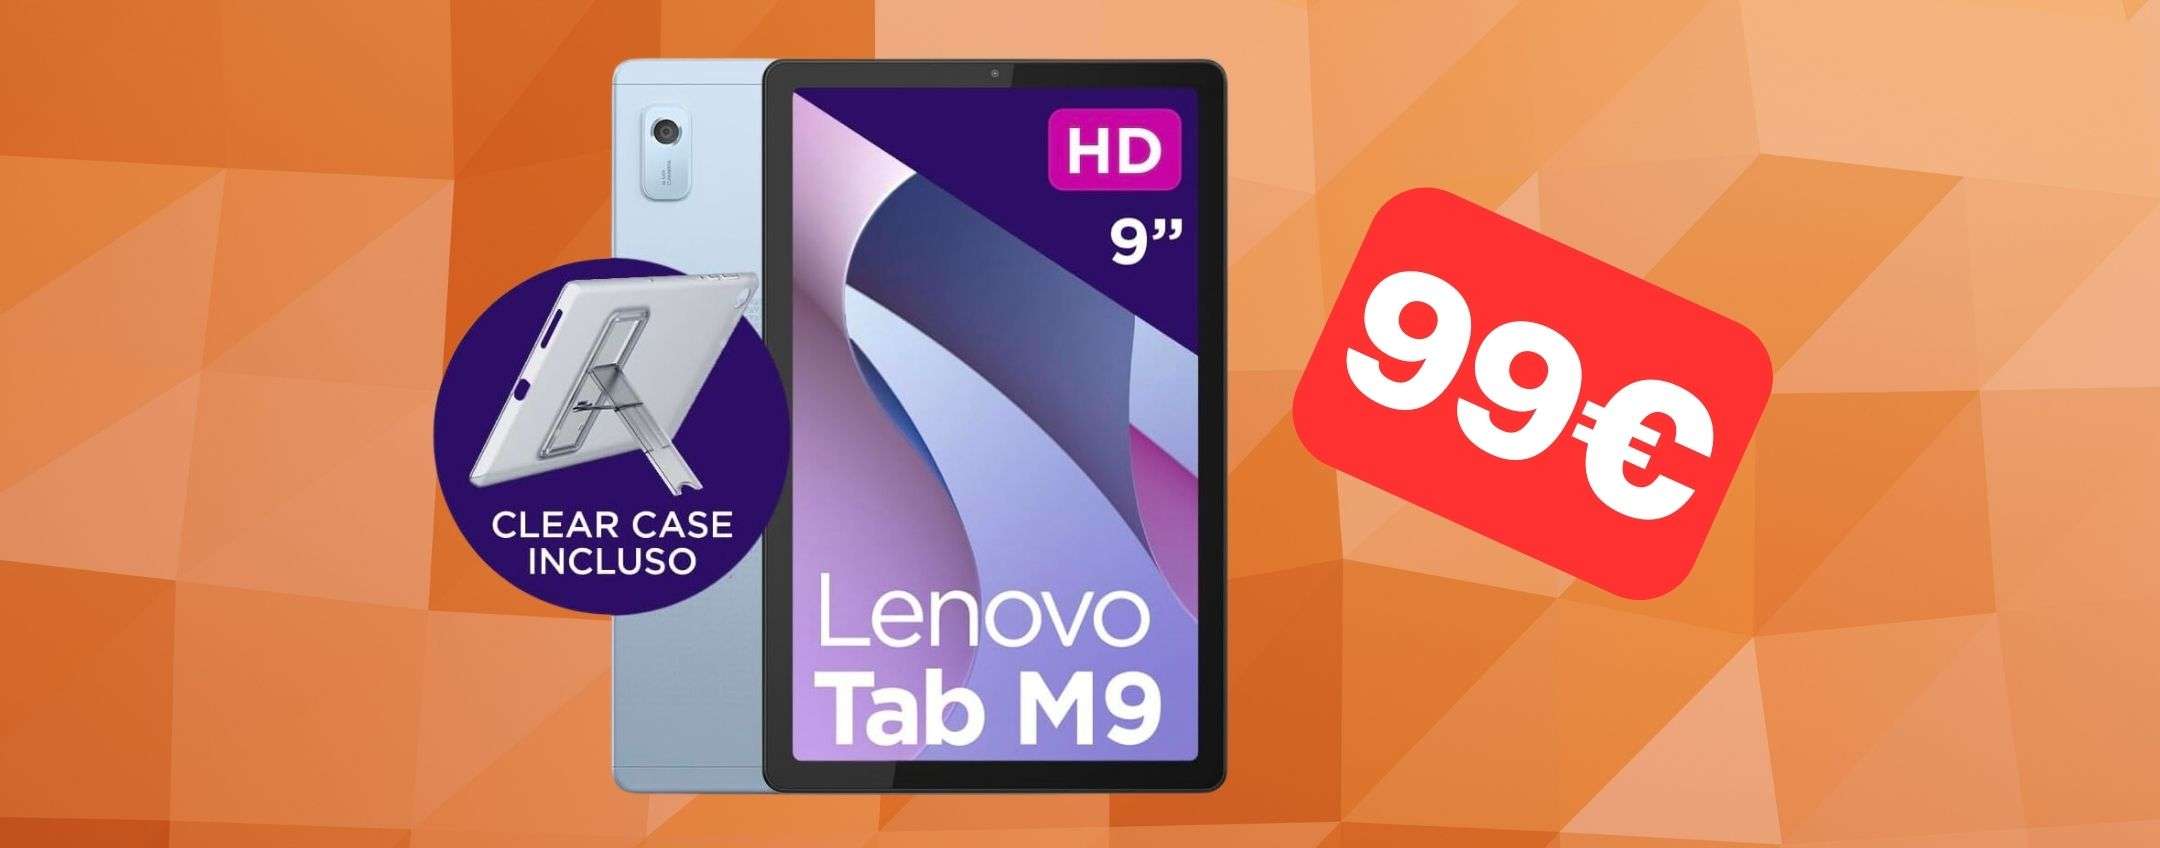 Tablet Lenovo a 99 euro: offerta Natalizia di